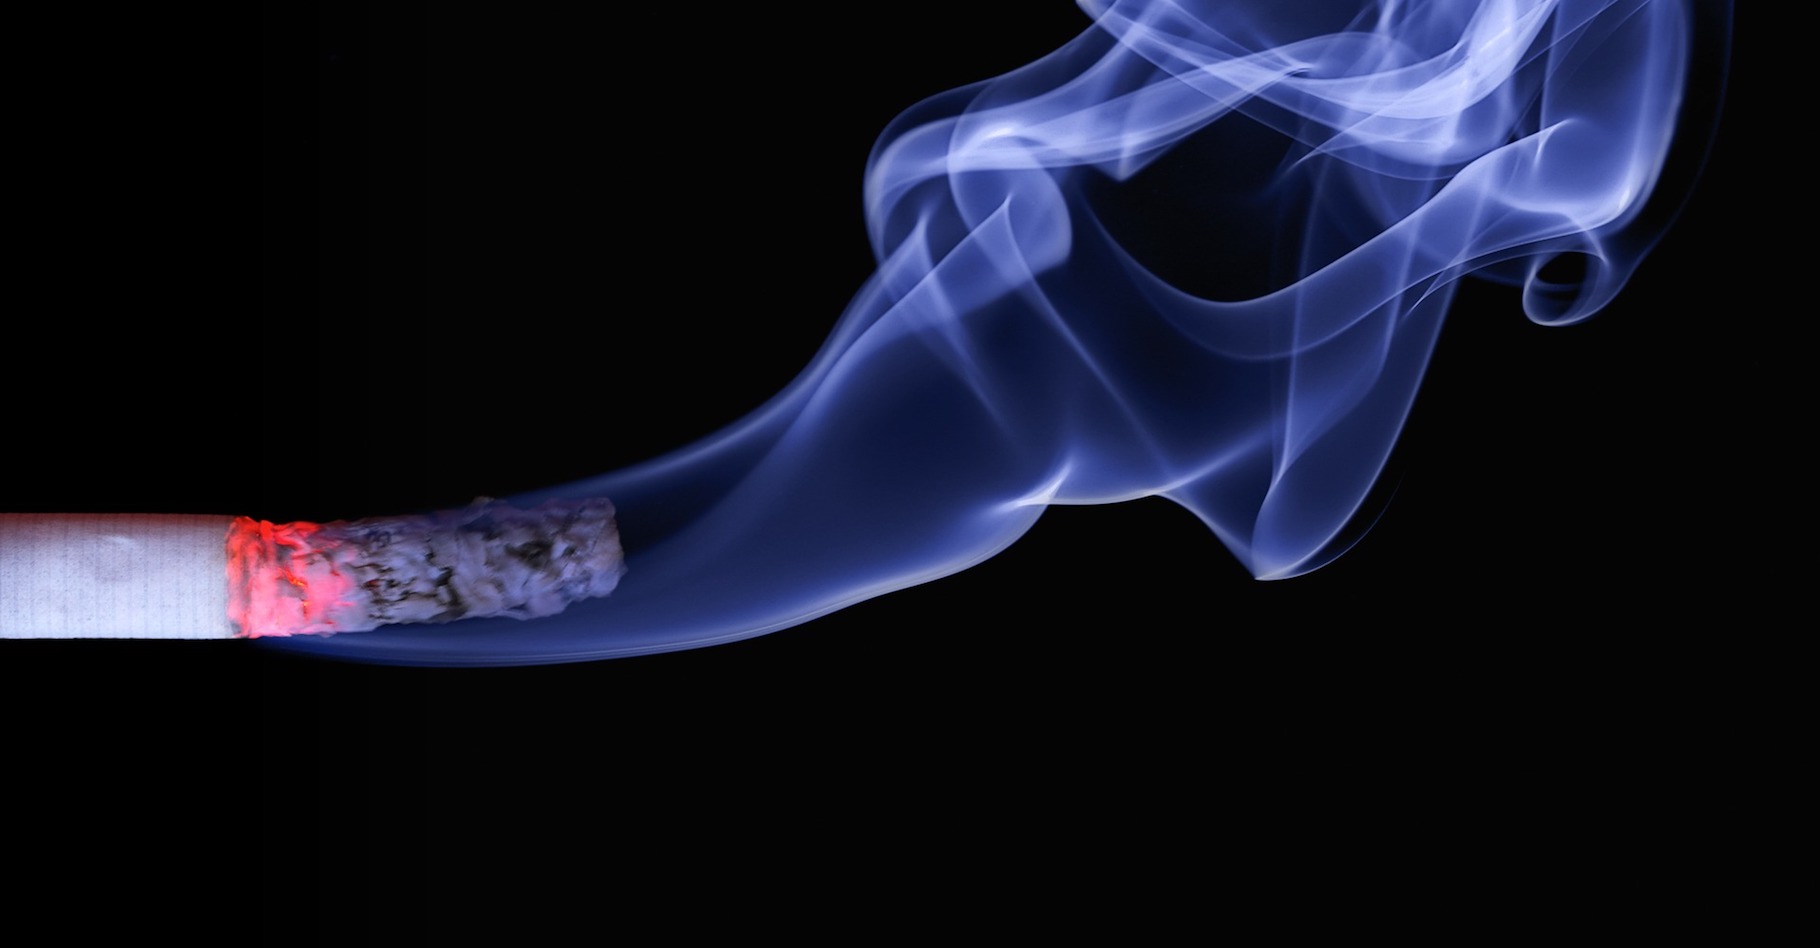 Le Centre international de recherche sur le cancer classe la fumée de cigarette parmi les substances cancérogènes avérées. Certains la qualifieraient plutôt de cancérigène… © realworkhard, Pixabay, CC0 Creative Commons